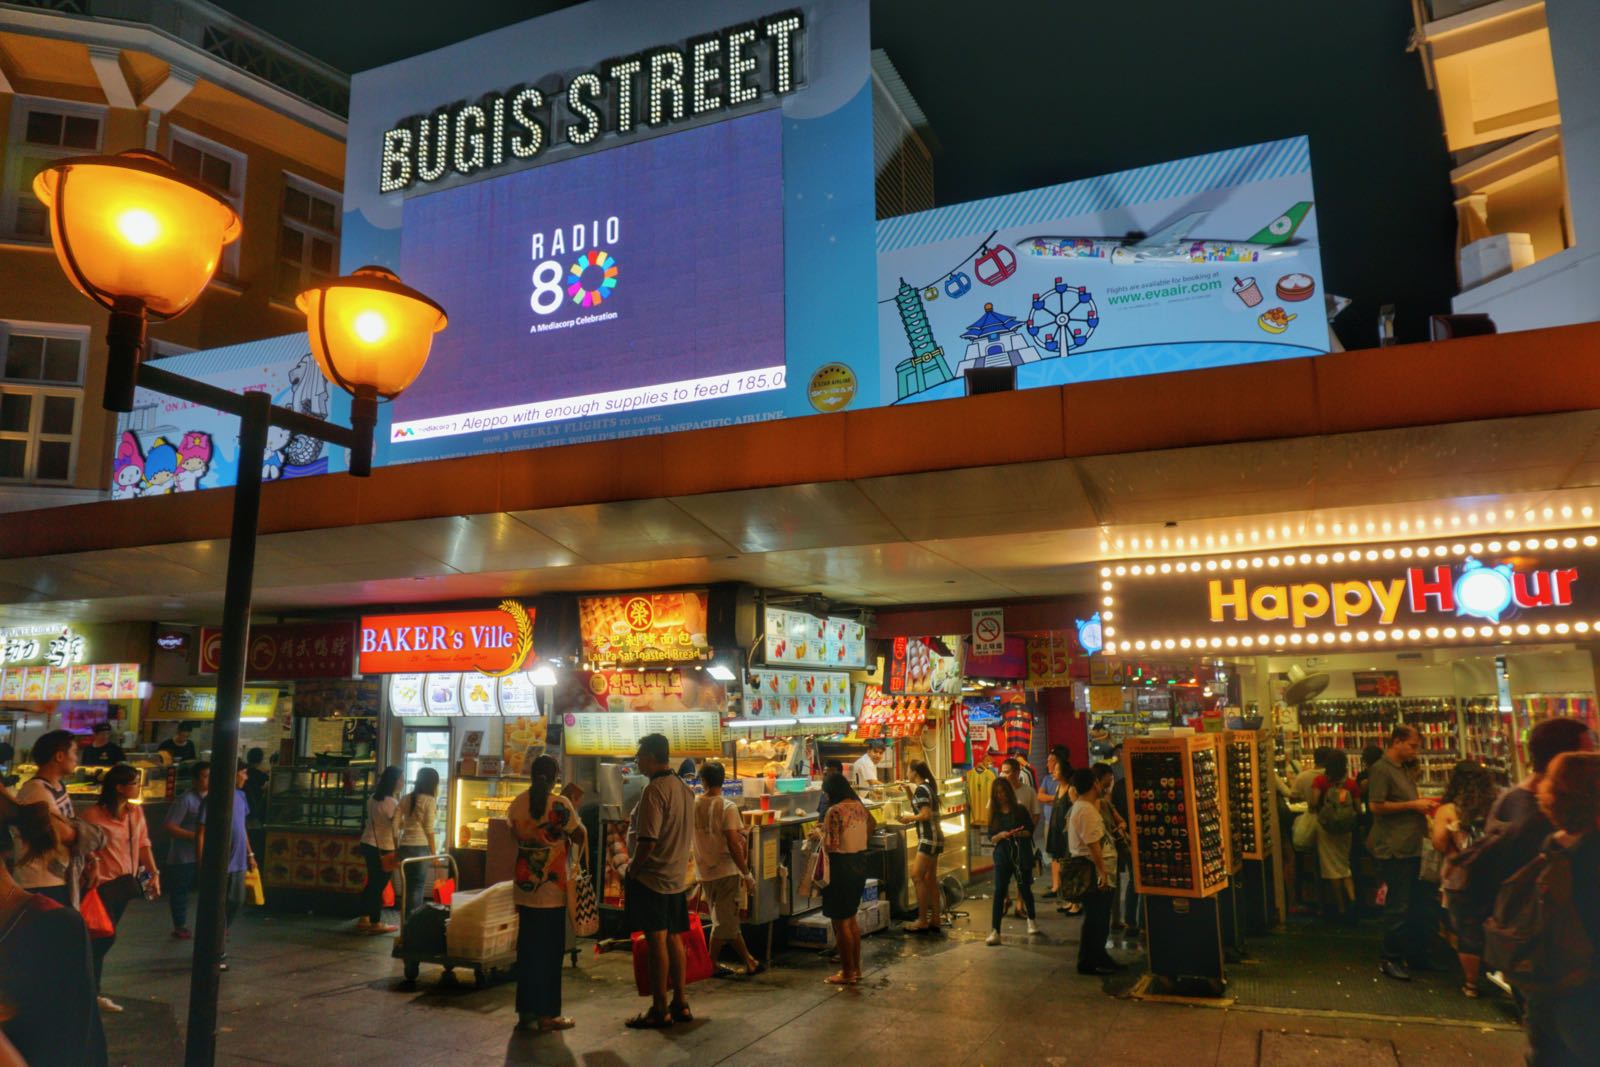 Bugis Street Singapore